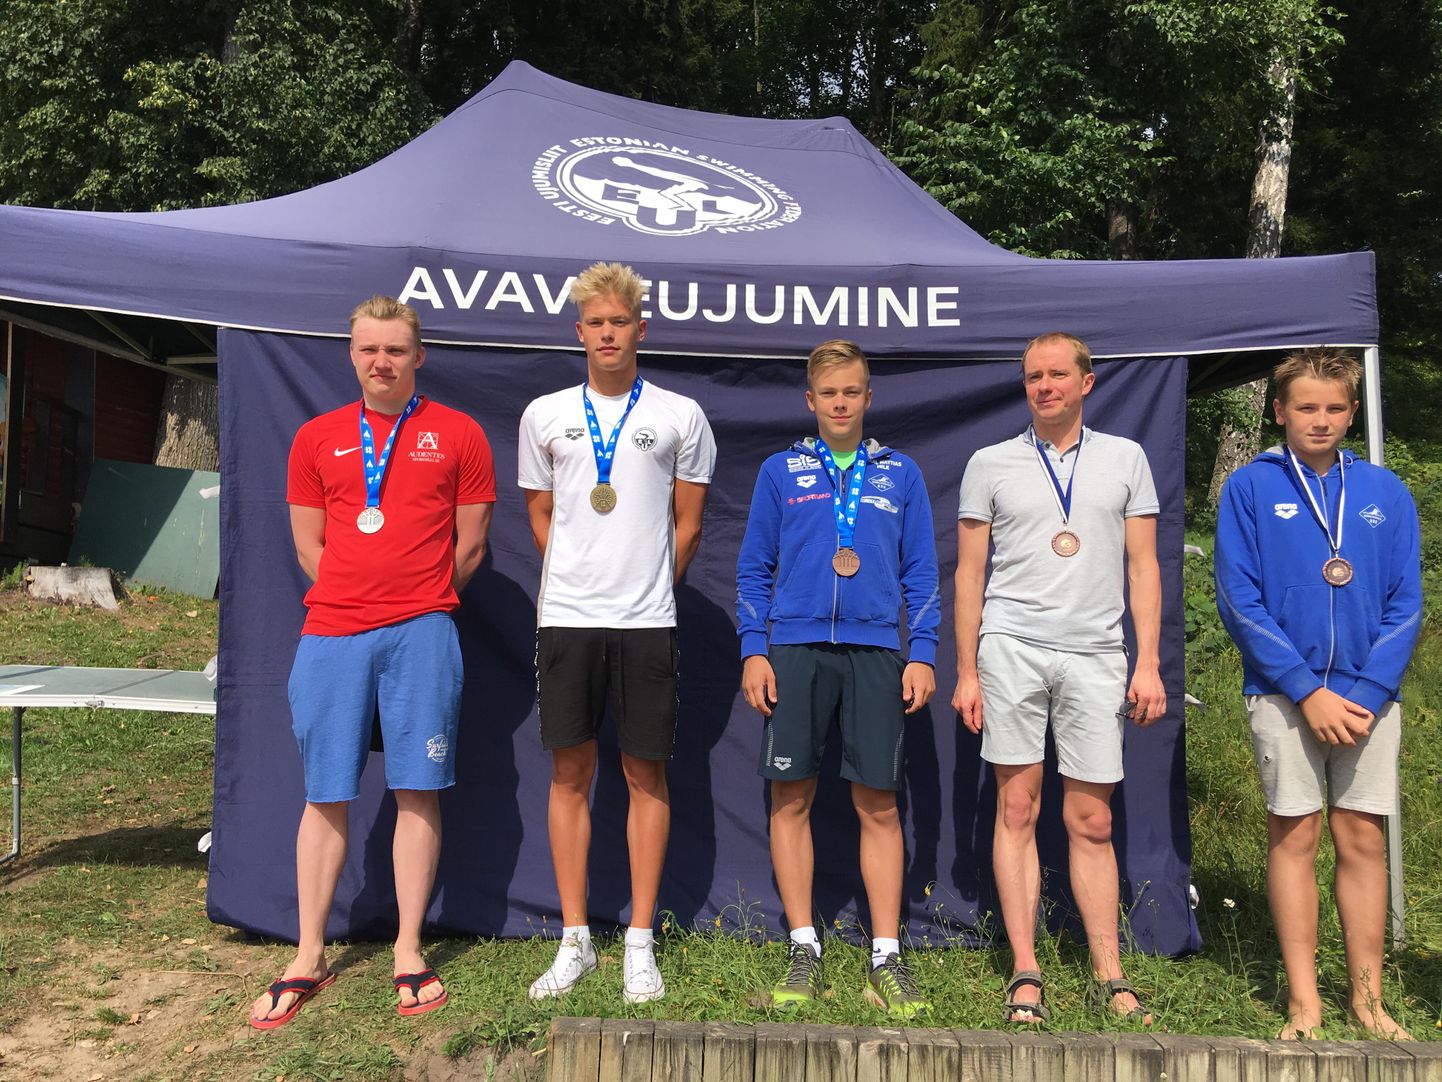 Möödunud nädalavahetusel peeti Pühajärvel Eesti meistrivõistlused avaveeujumises, kus Tartumaalt pärit Karl Mattias Milk (vasakult kolmas) võitis pronksmedali.